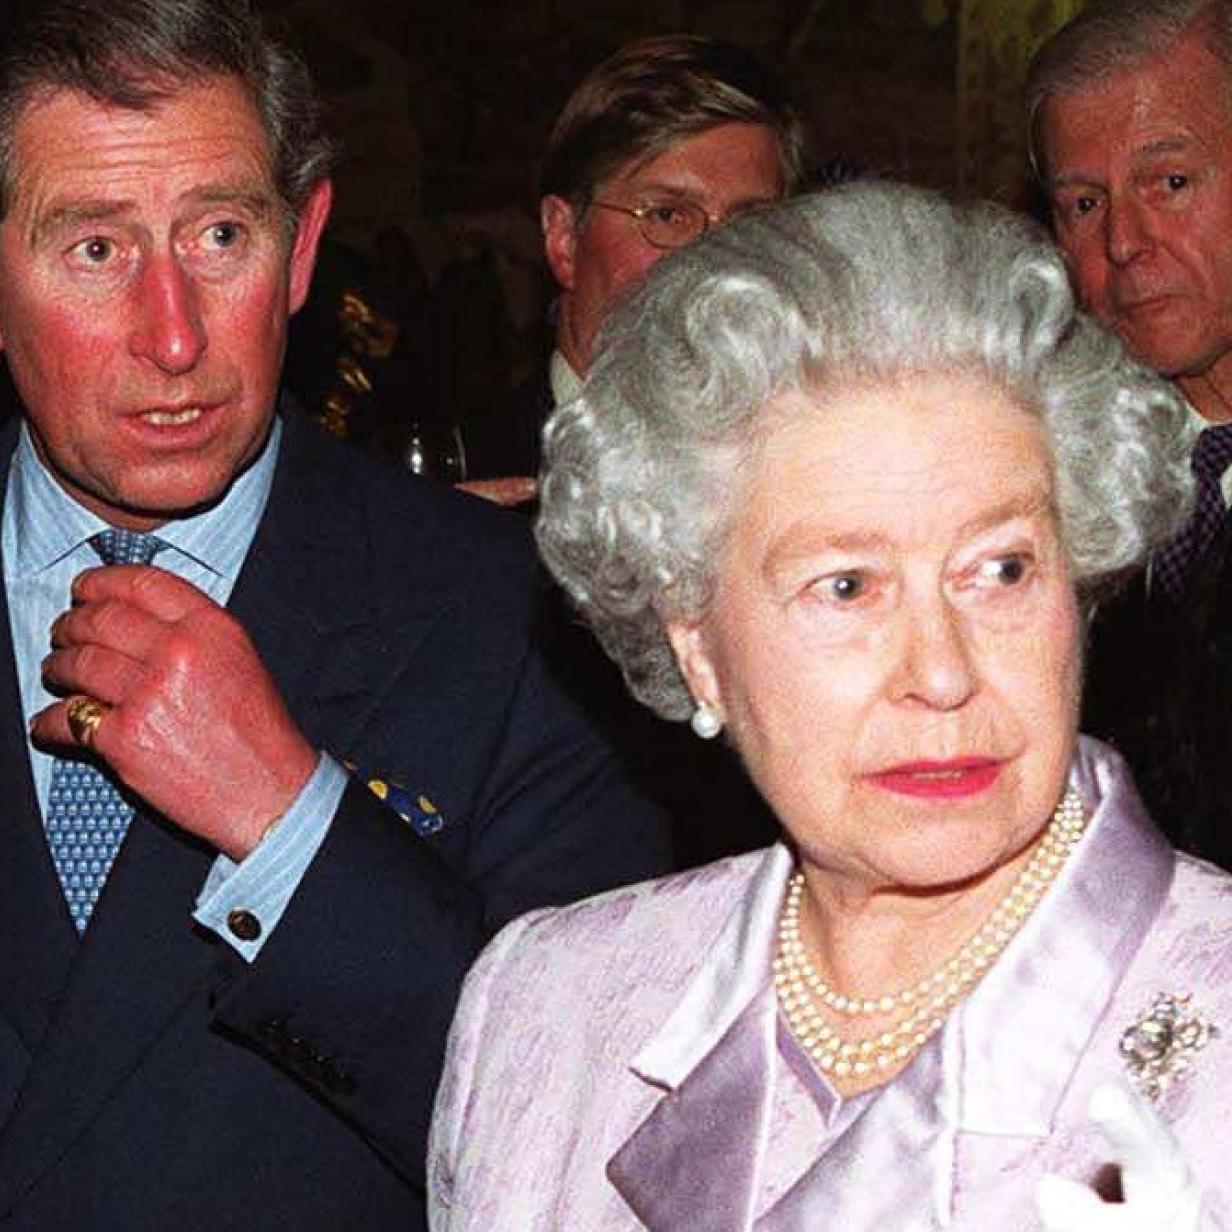 Queen Hatte Prinz Charles Bereits Aufgegeben Kurier At